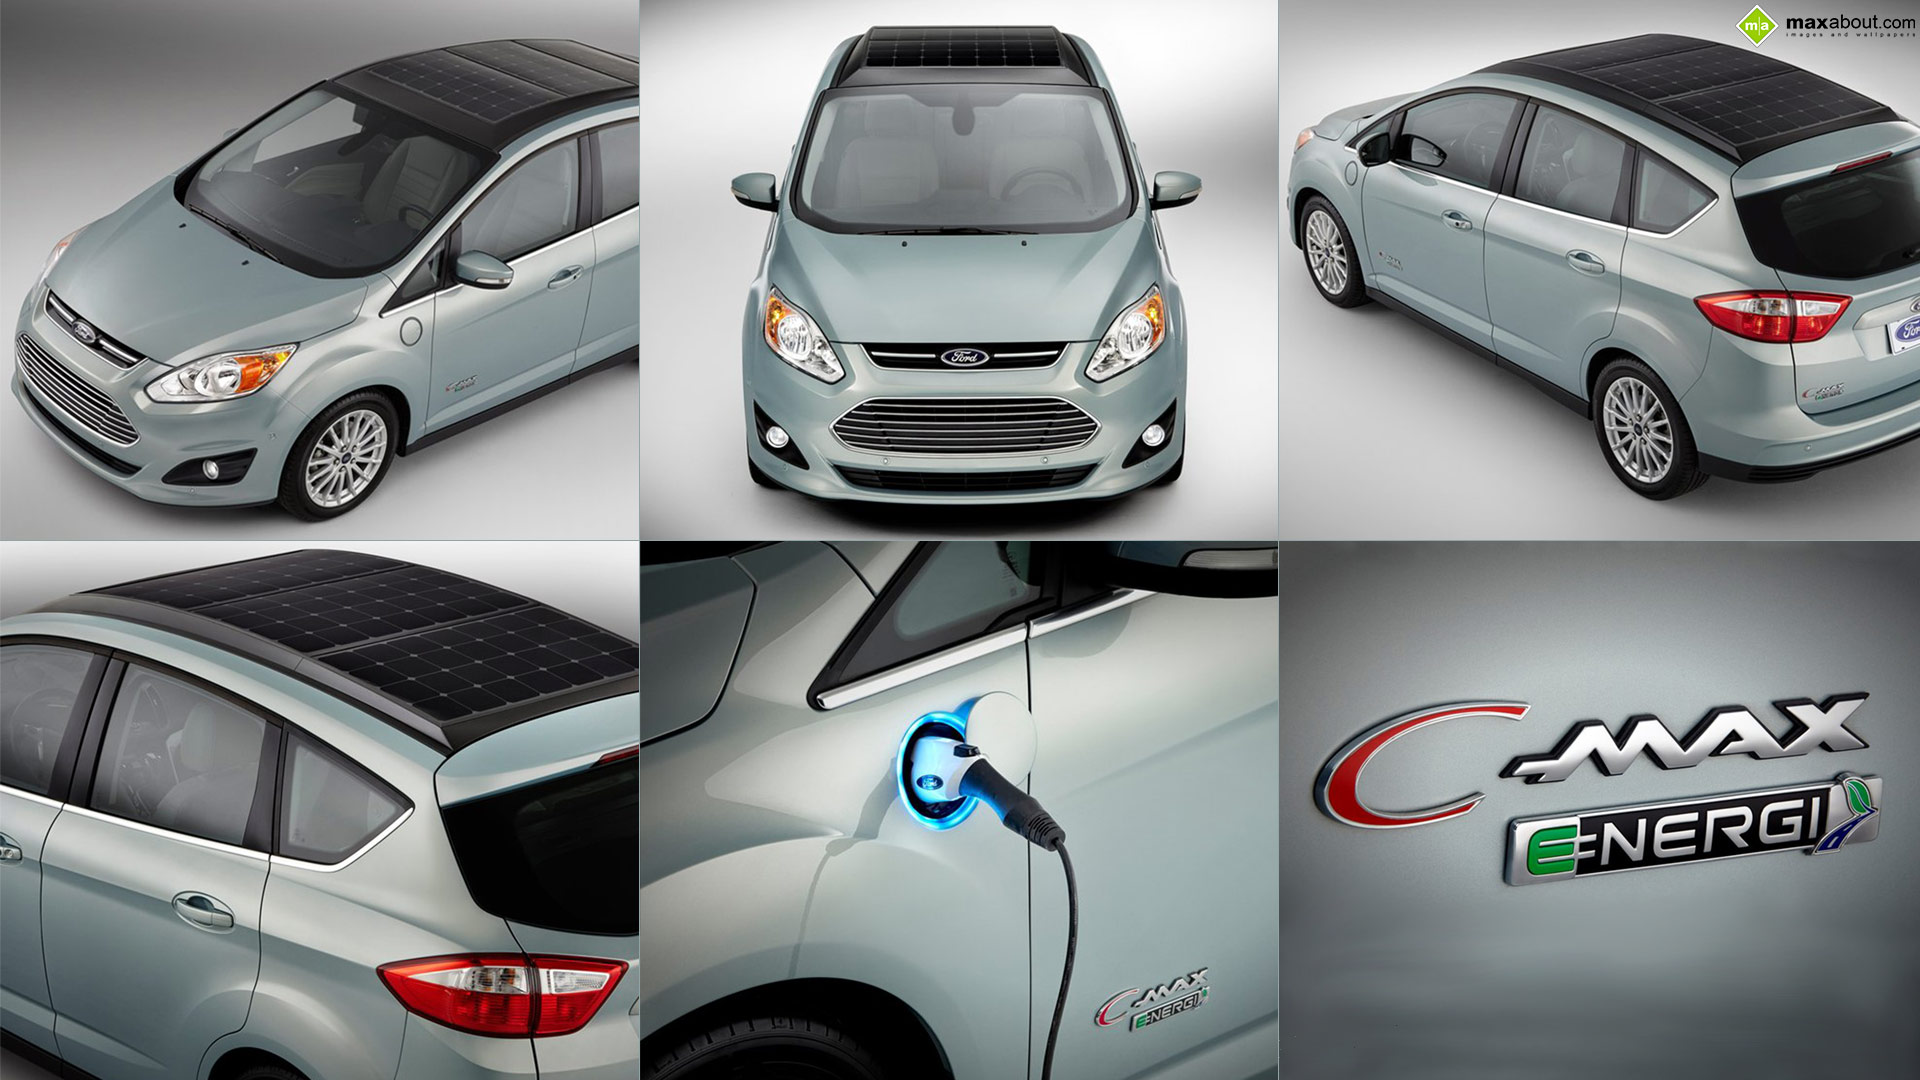 C-max solar energi concept de ford #1